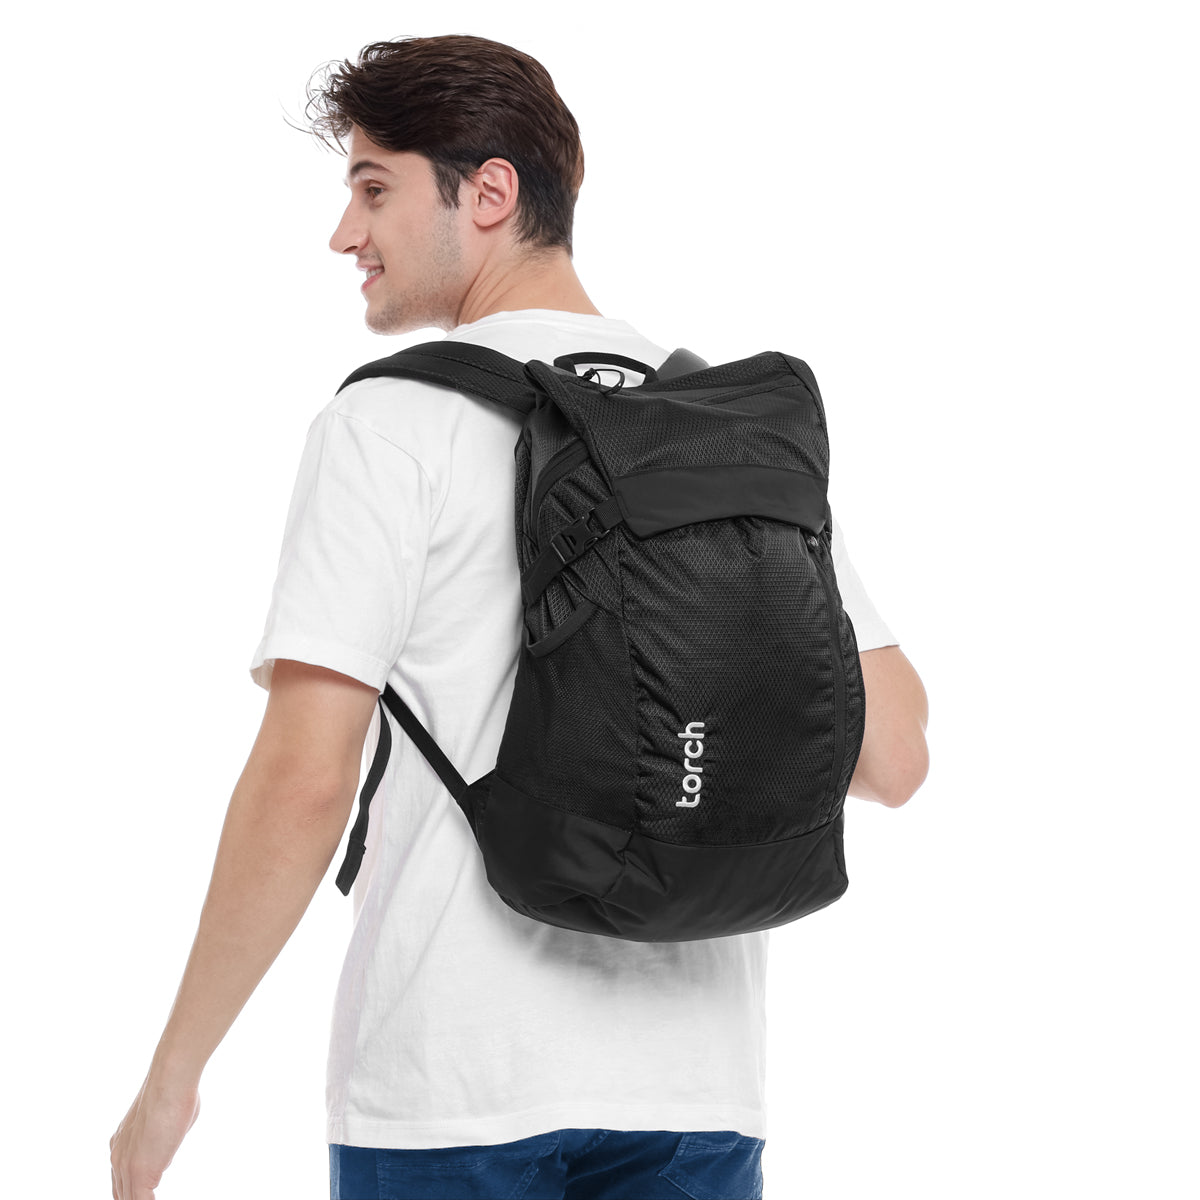 Ishikari Backpack 20 + 2 Liter